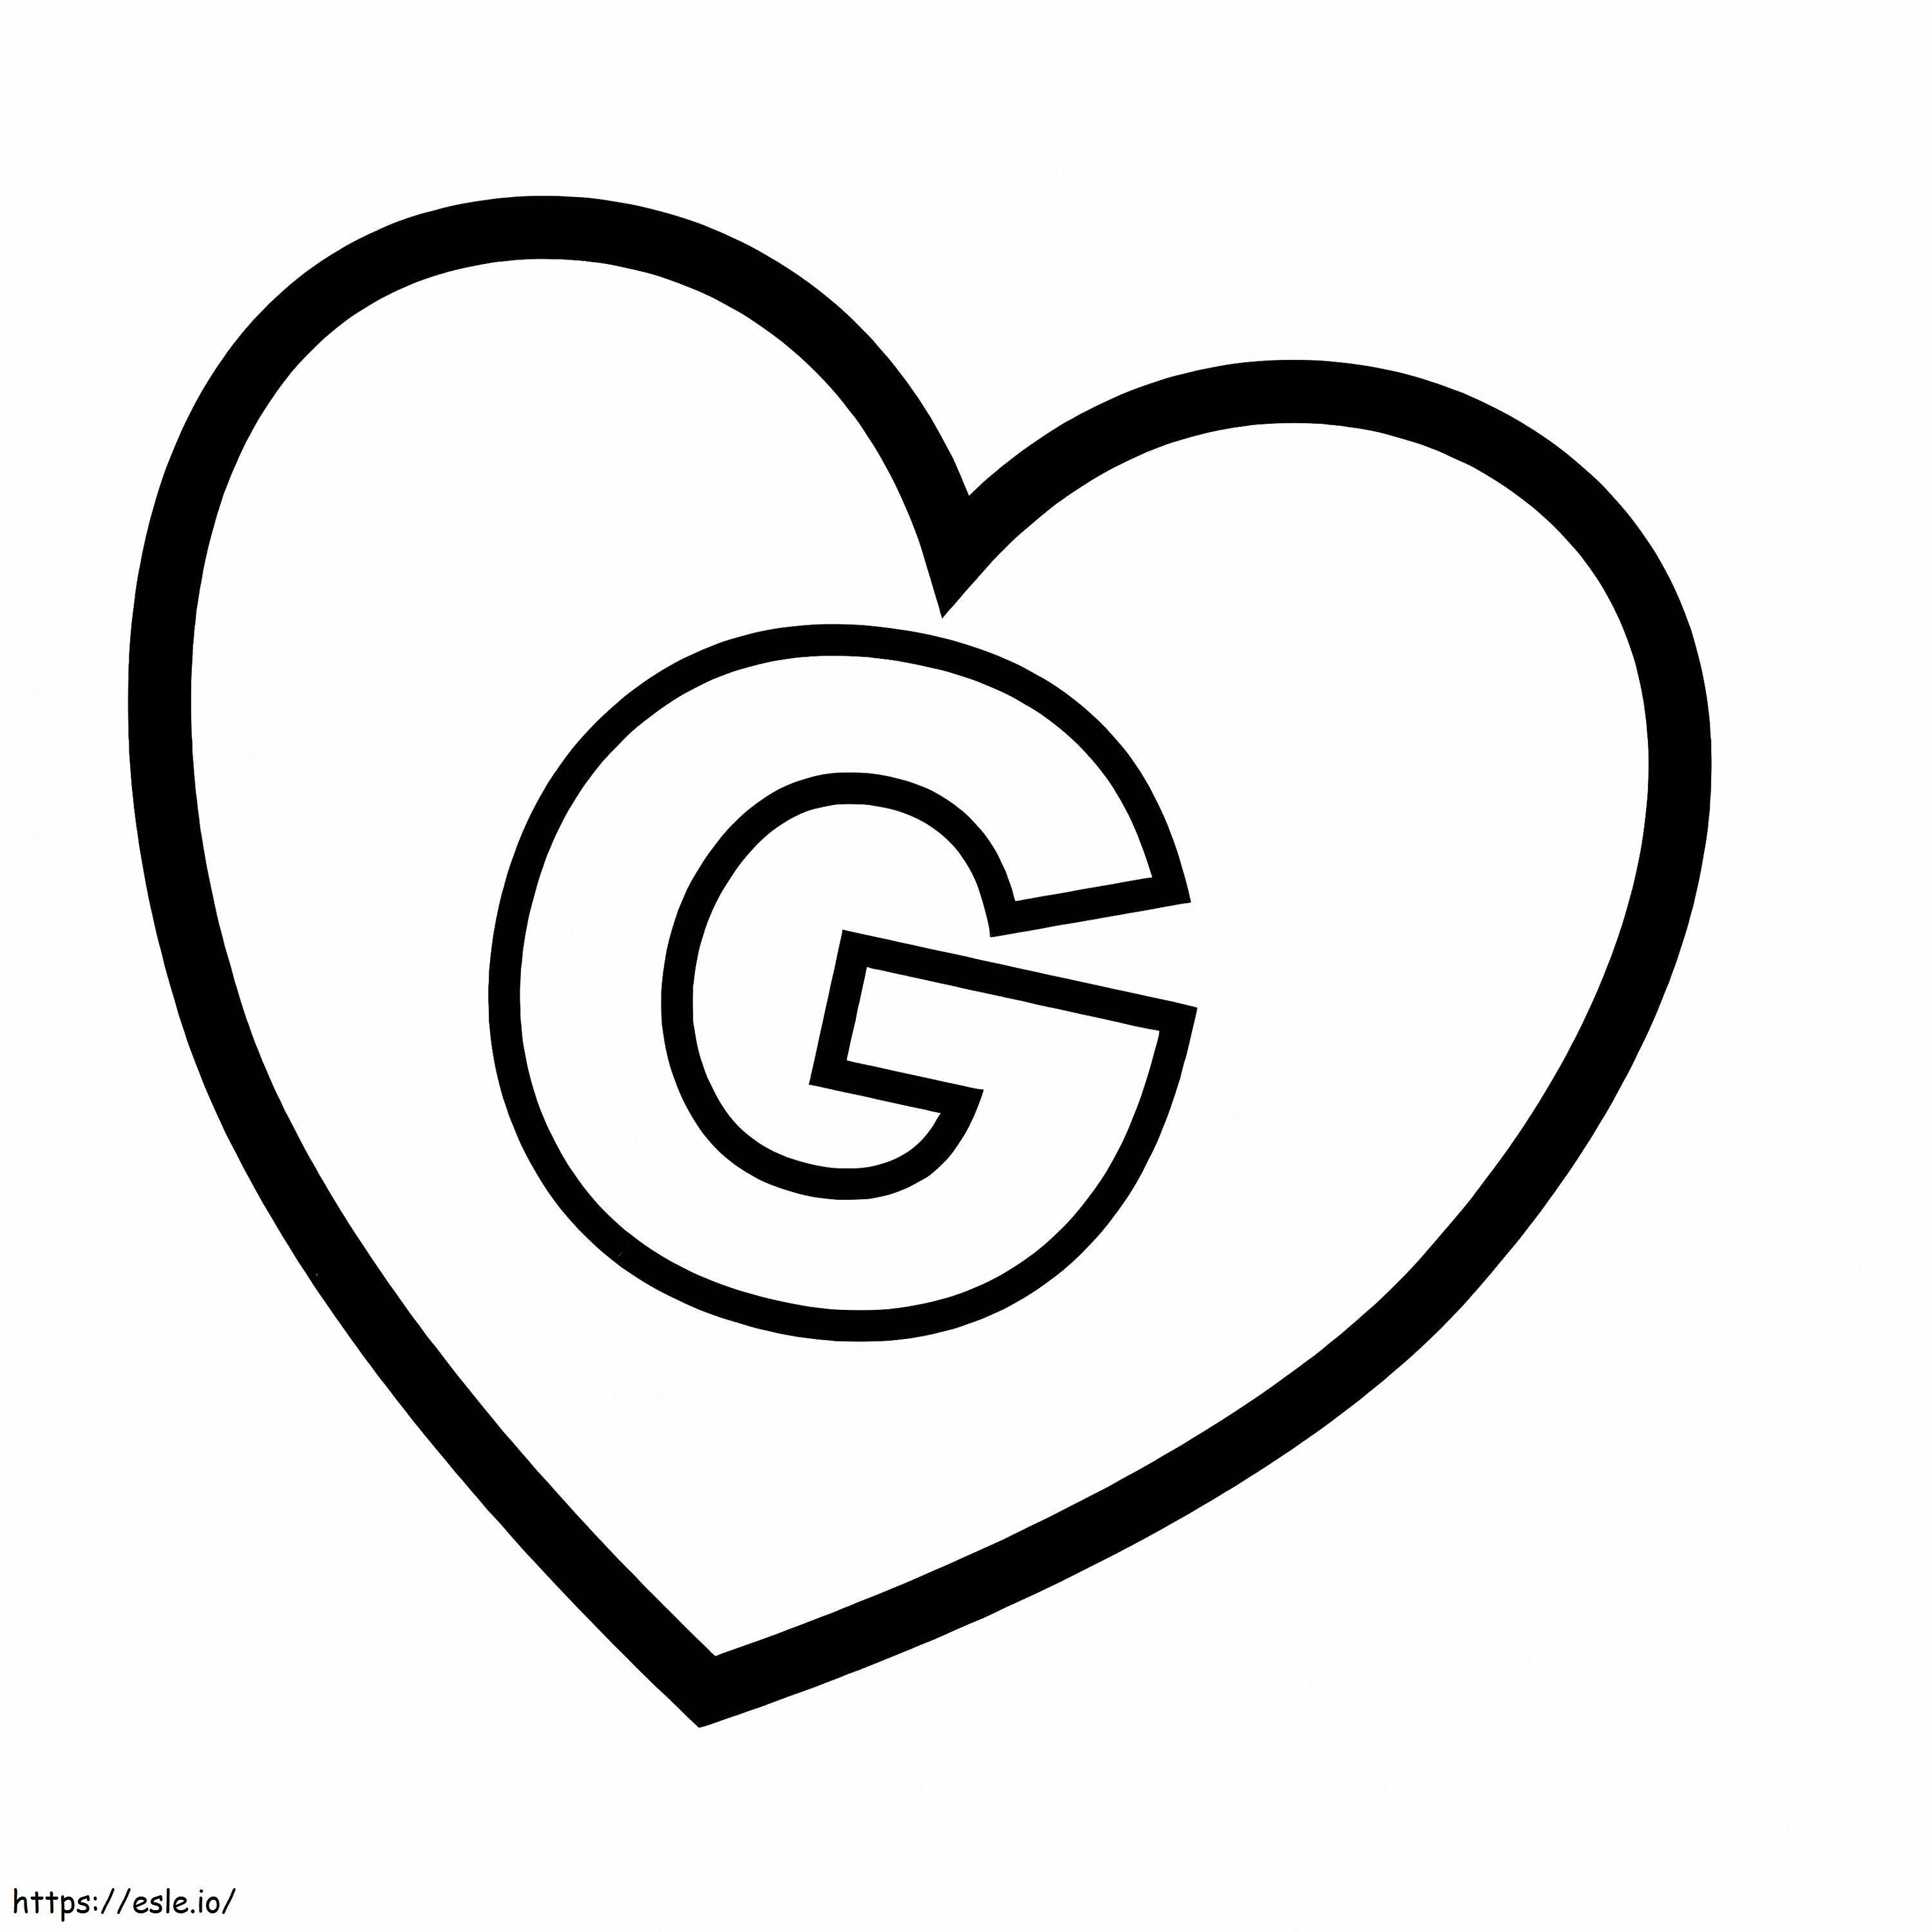 Coloriage Lettre G en coeur à imprimer dessin